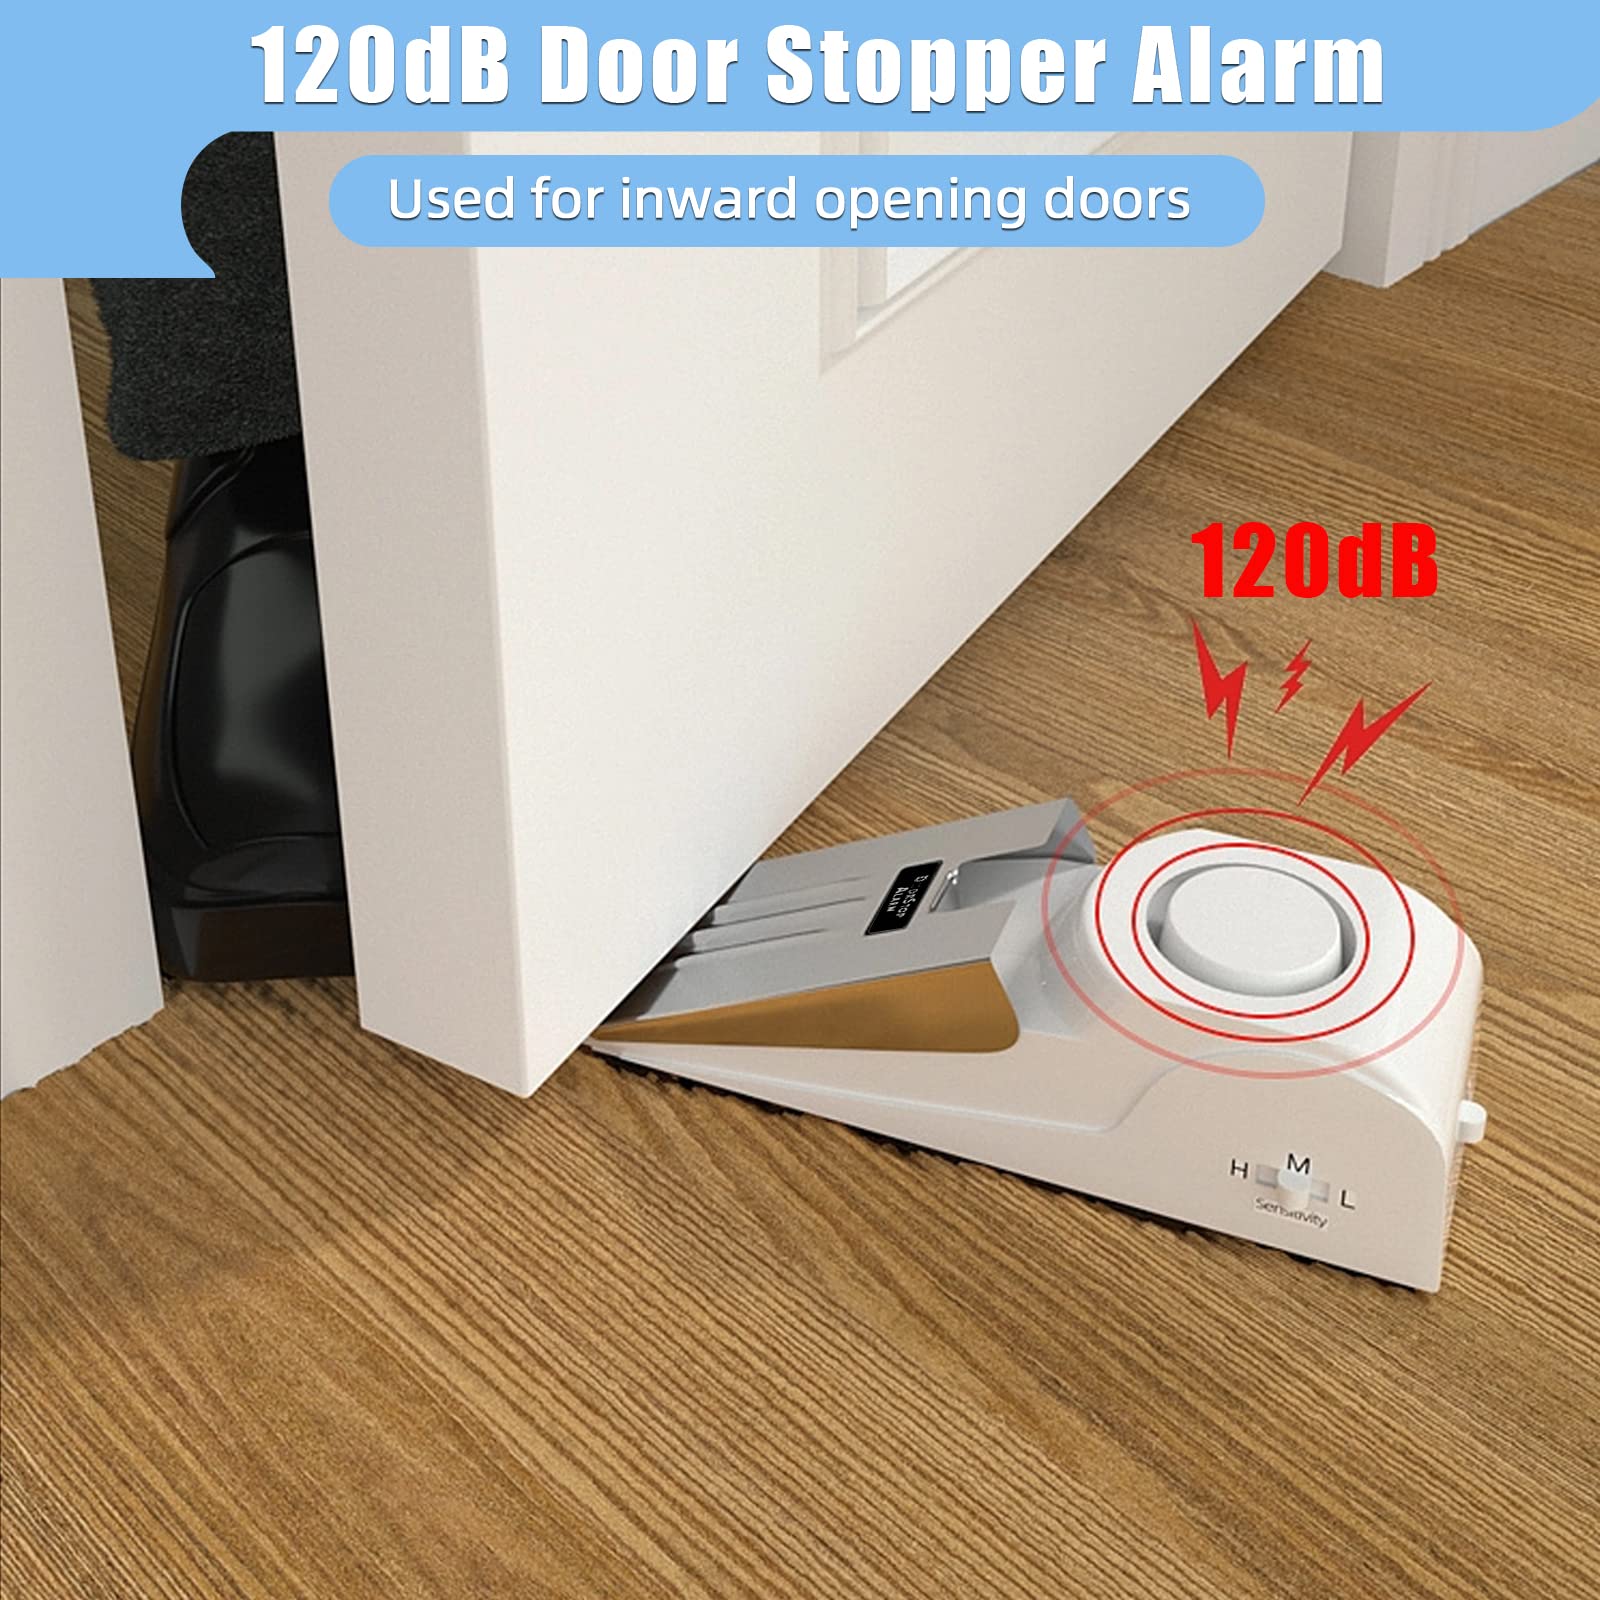 KERUI Door Stop Alarm with 120dB Siren Security Door Stopper Alarm for Travel, Hotel, Apartment and Home, 3 Levels Sensitivity Door Wedge Alarm (Pack of 4)